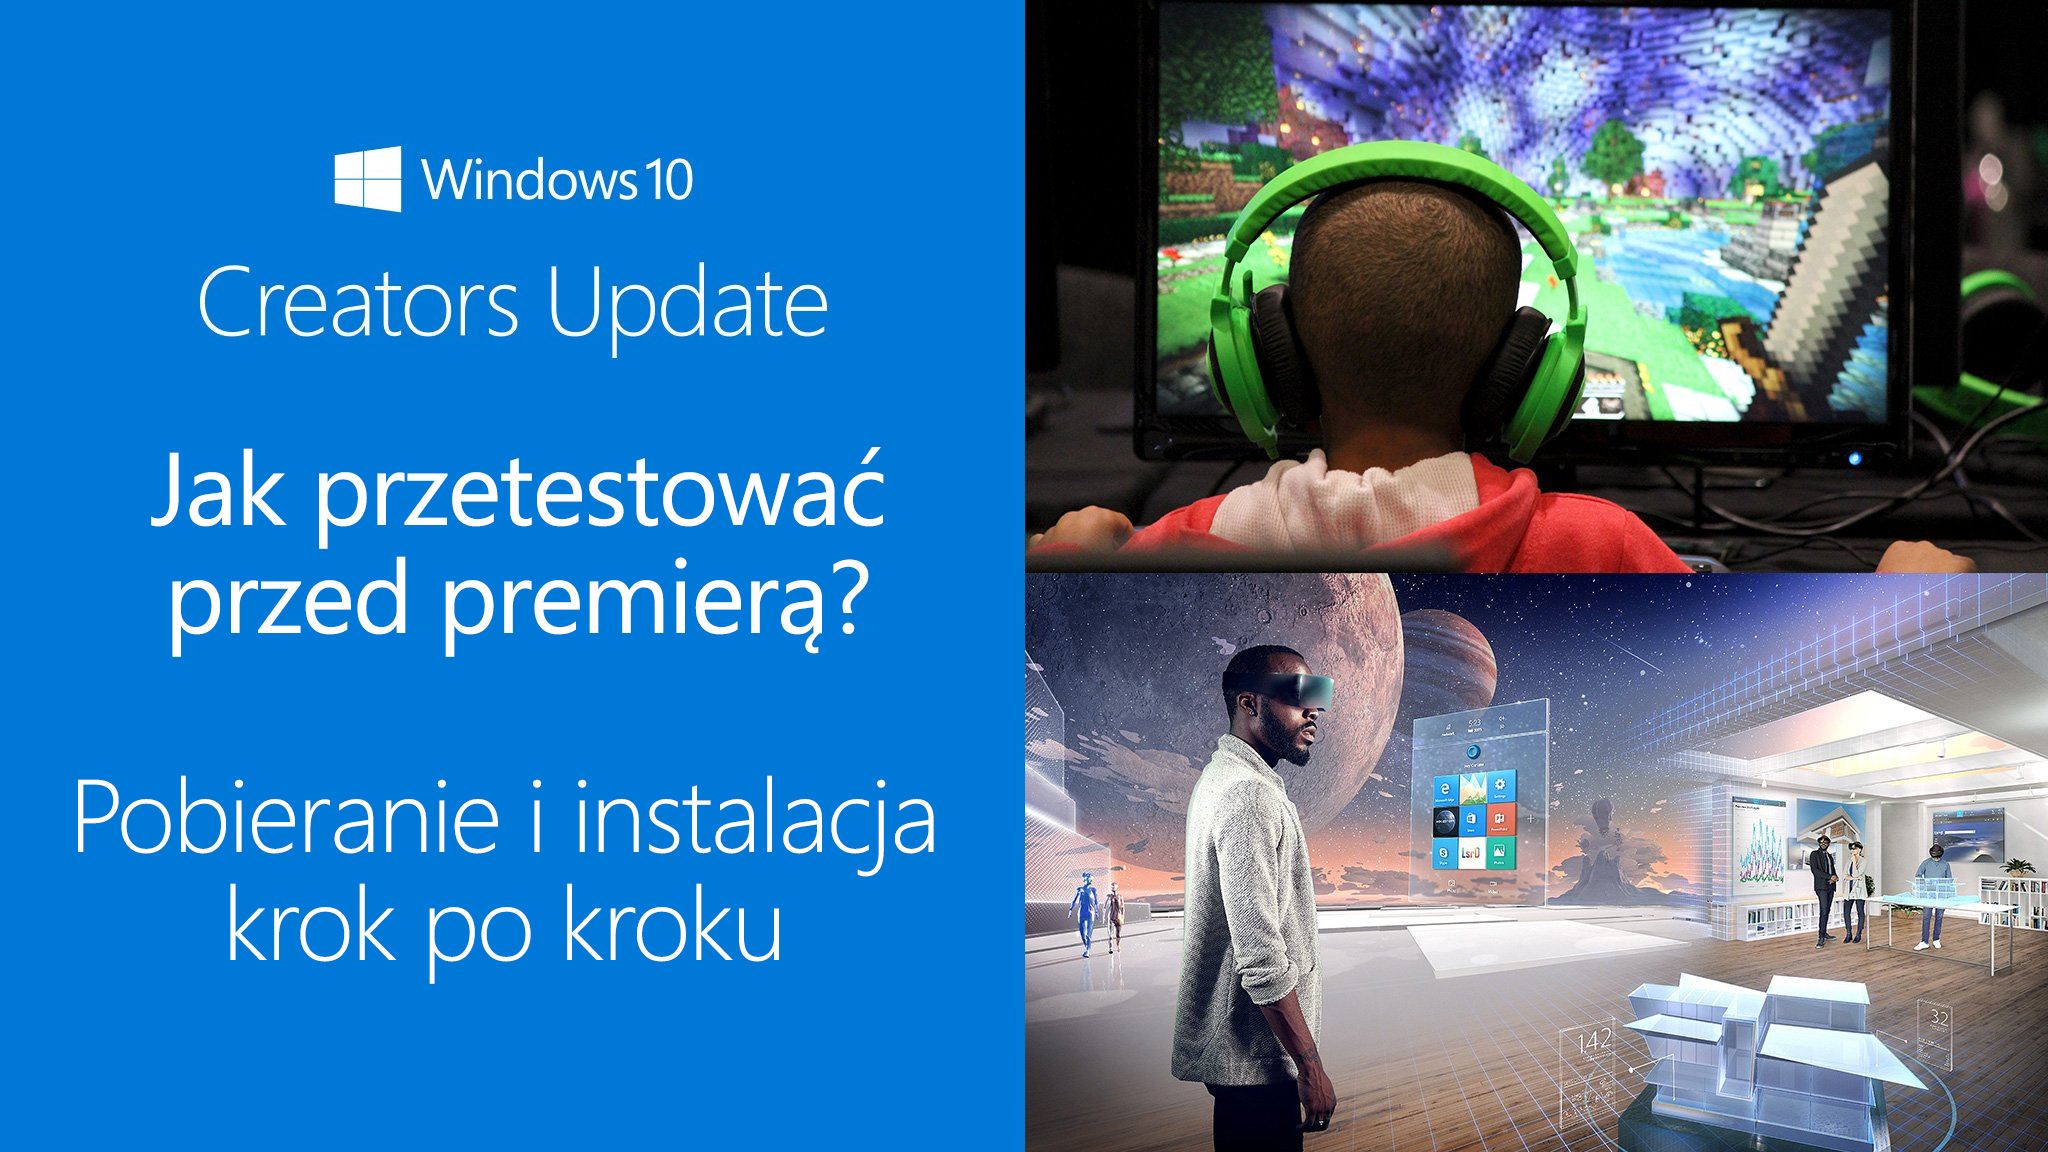 Как установить обновление для Windows 10 Creators перед премьерой